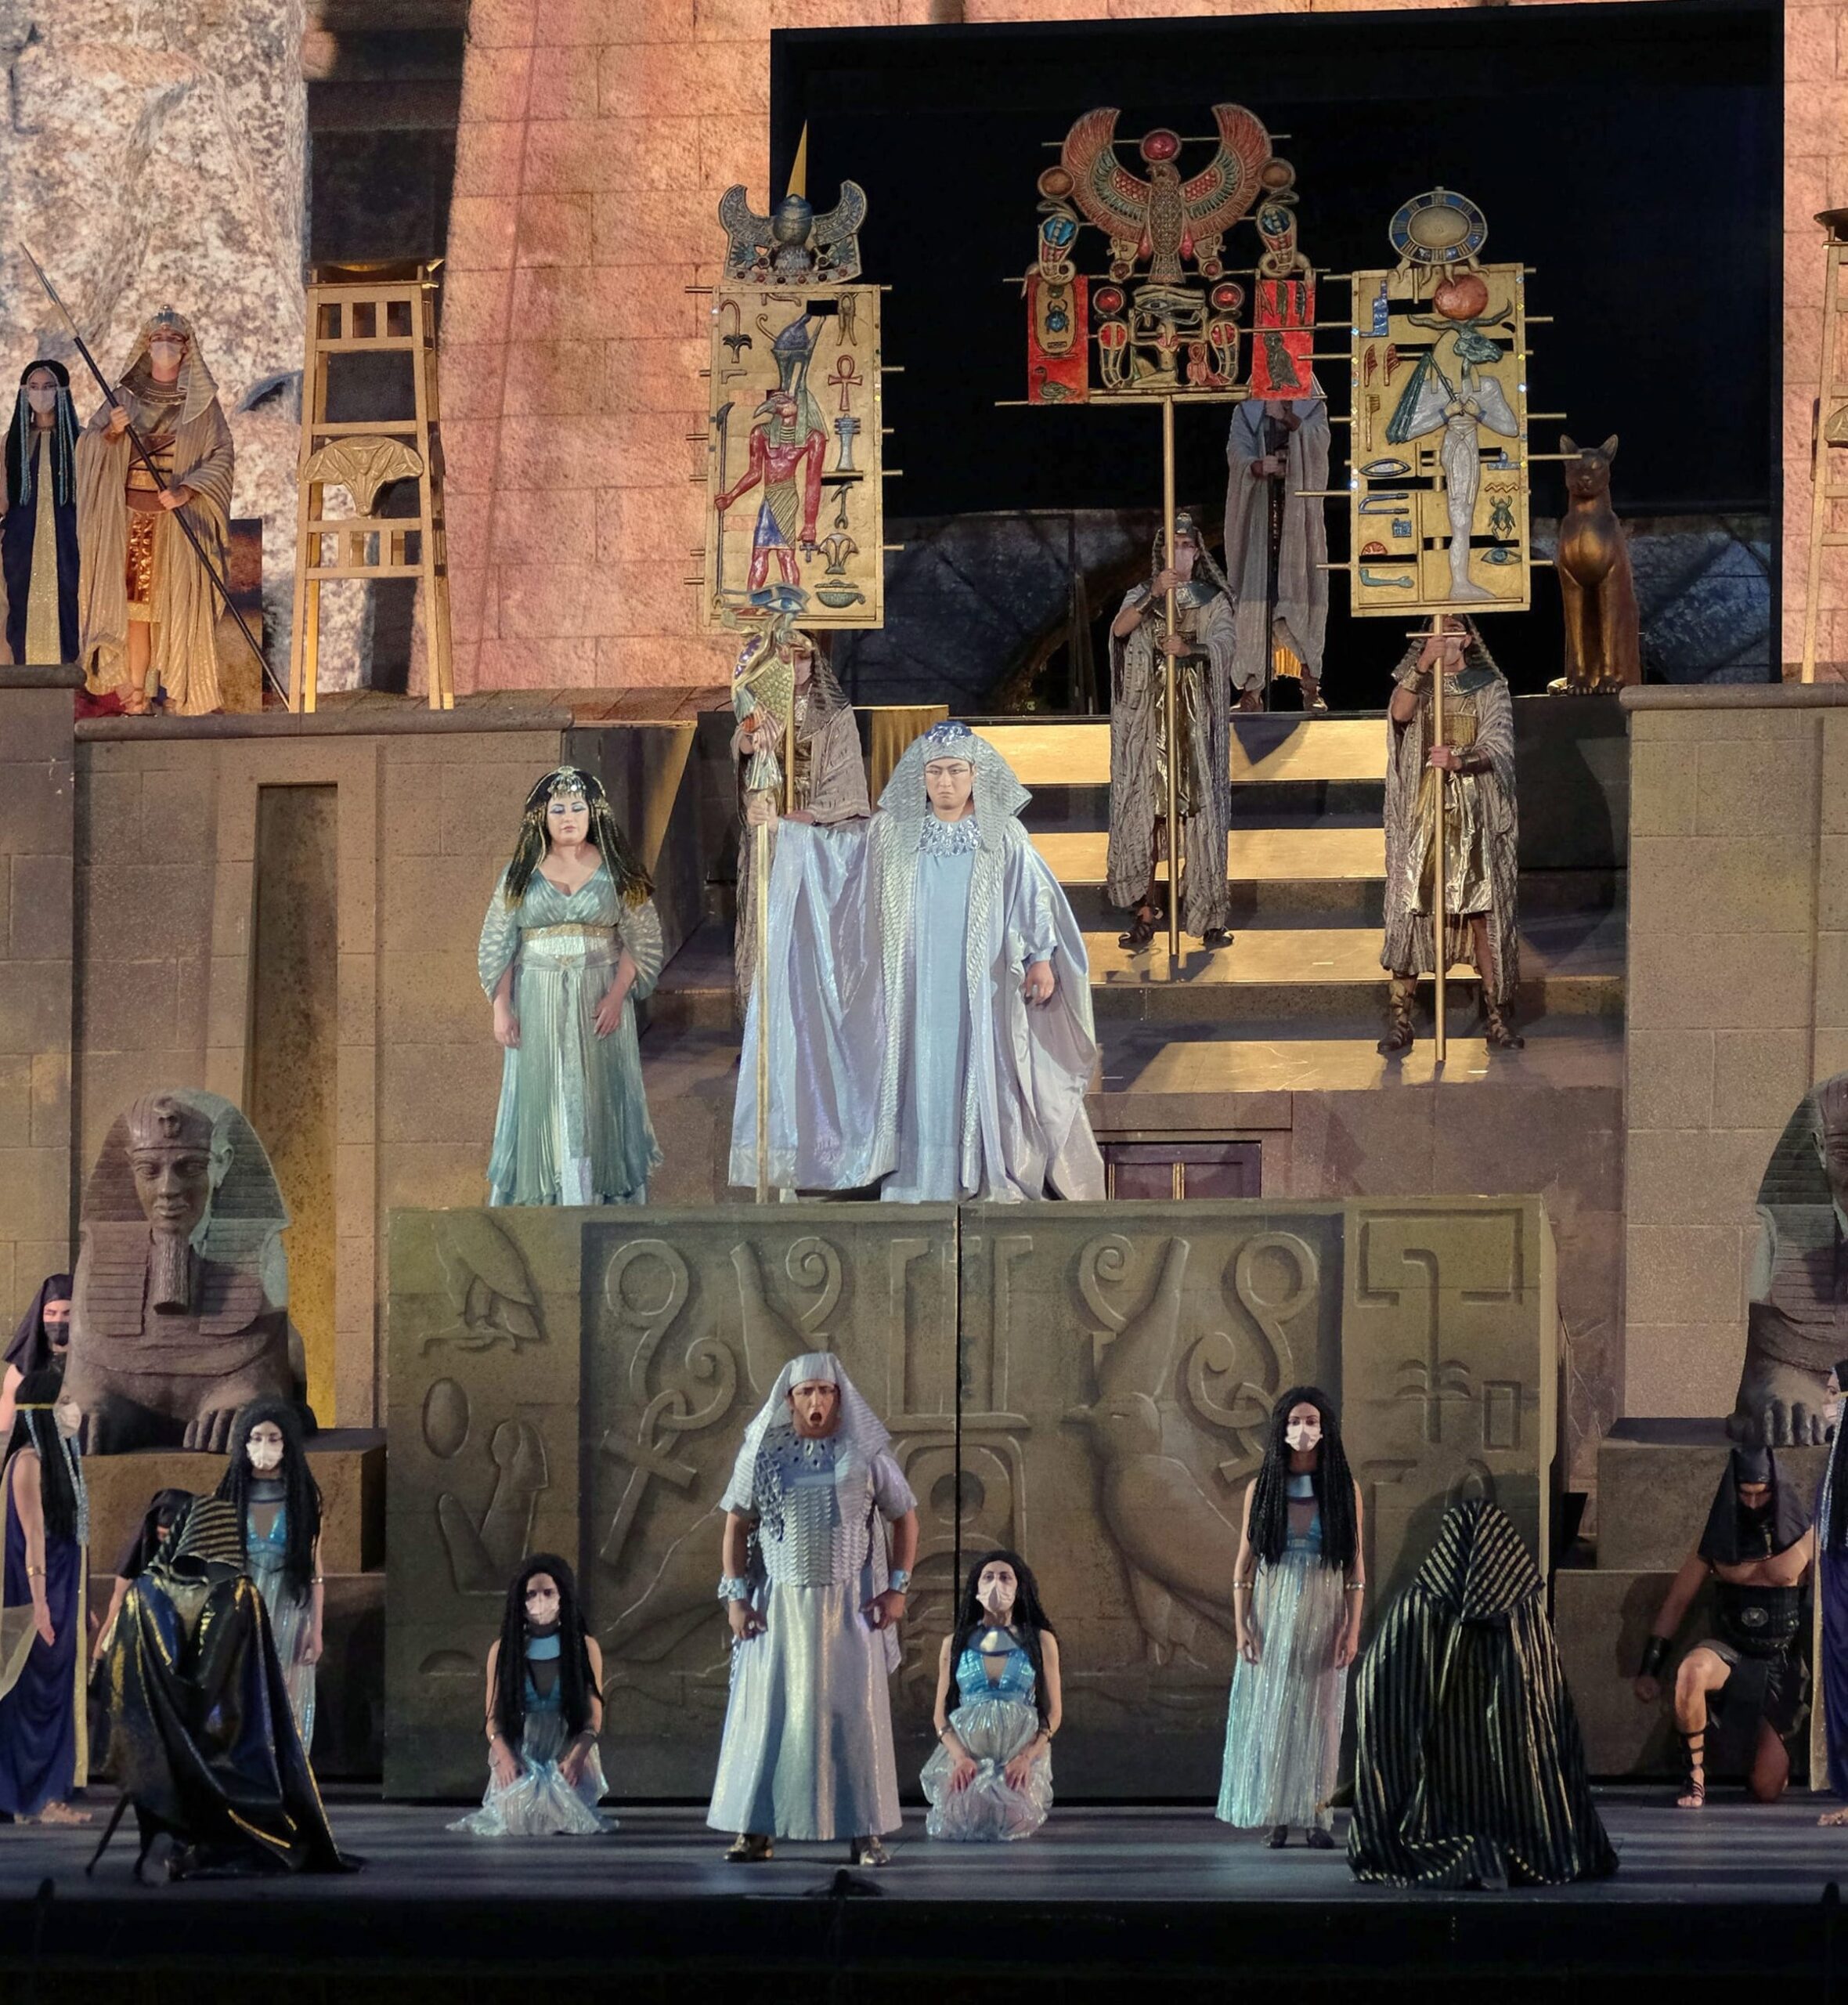 Tornano Aida e Cavalleria rusticana/Pagliacci con novità nel cast e le spettacolari scenografie digitali e architettoniche